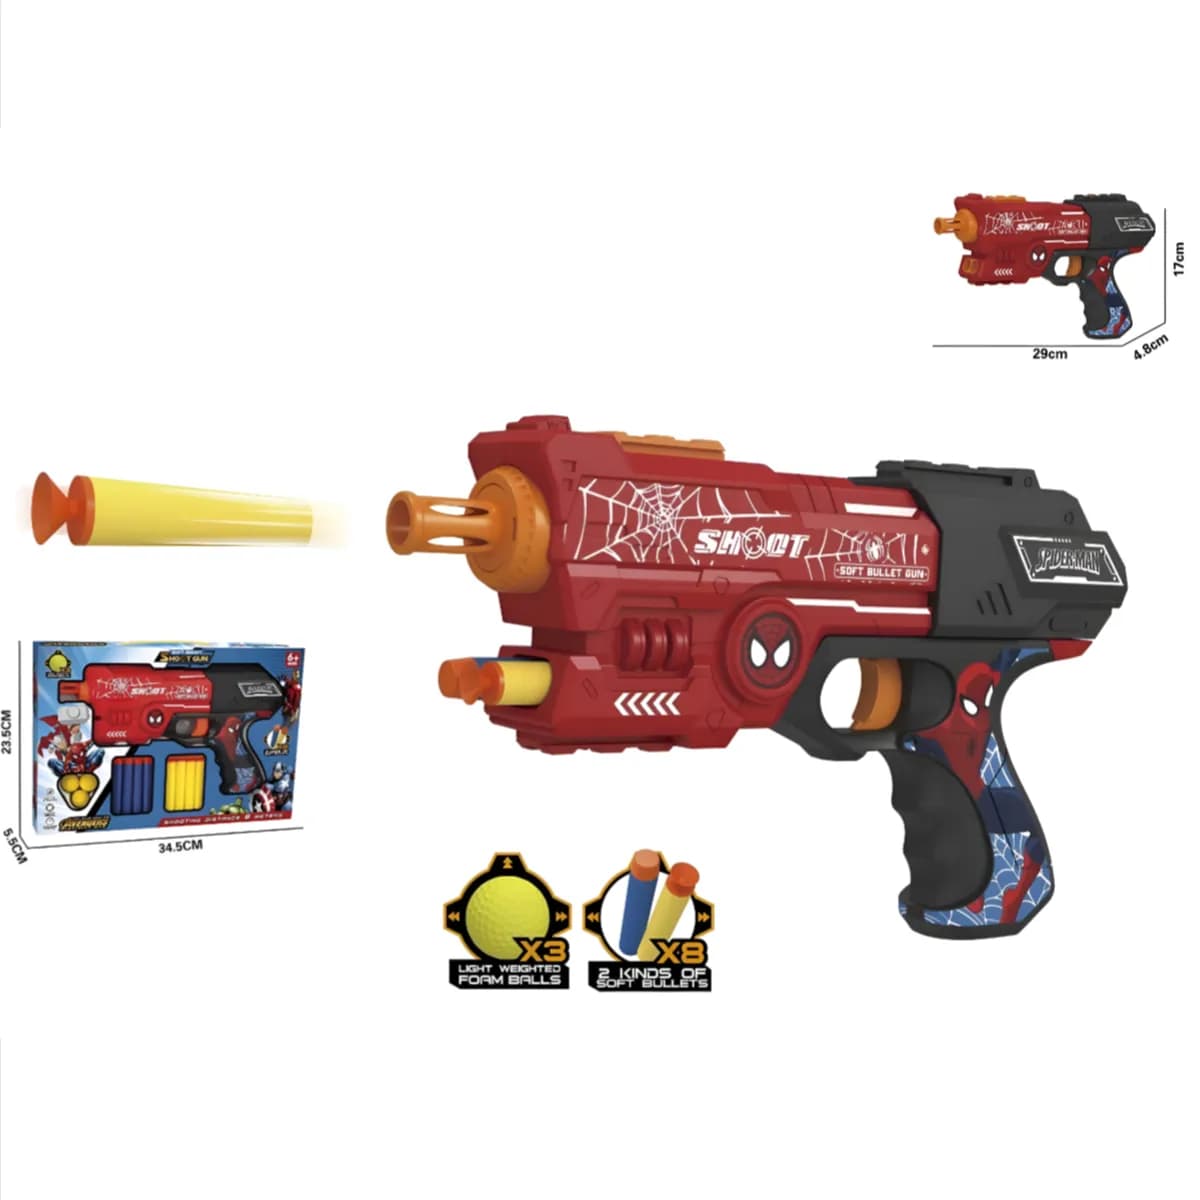 Soft Bullet Launcher Blaster Gun For Kids - (GNIS67)